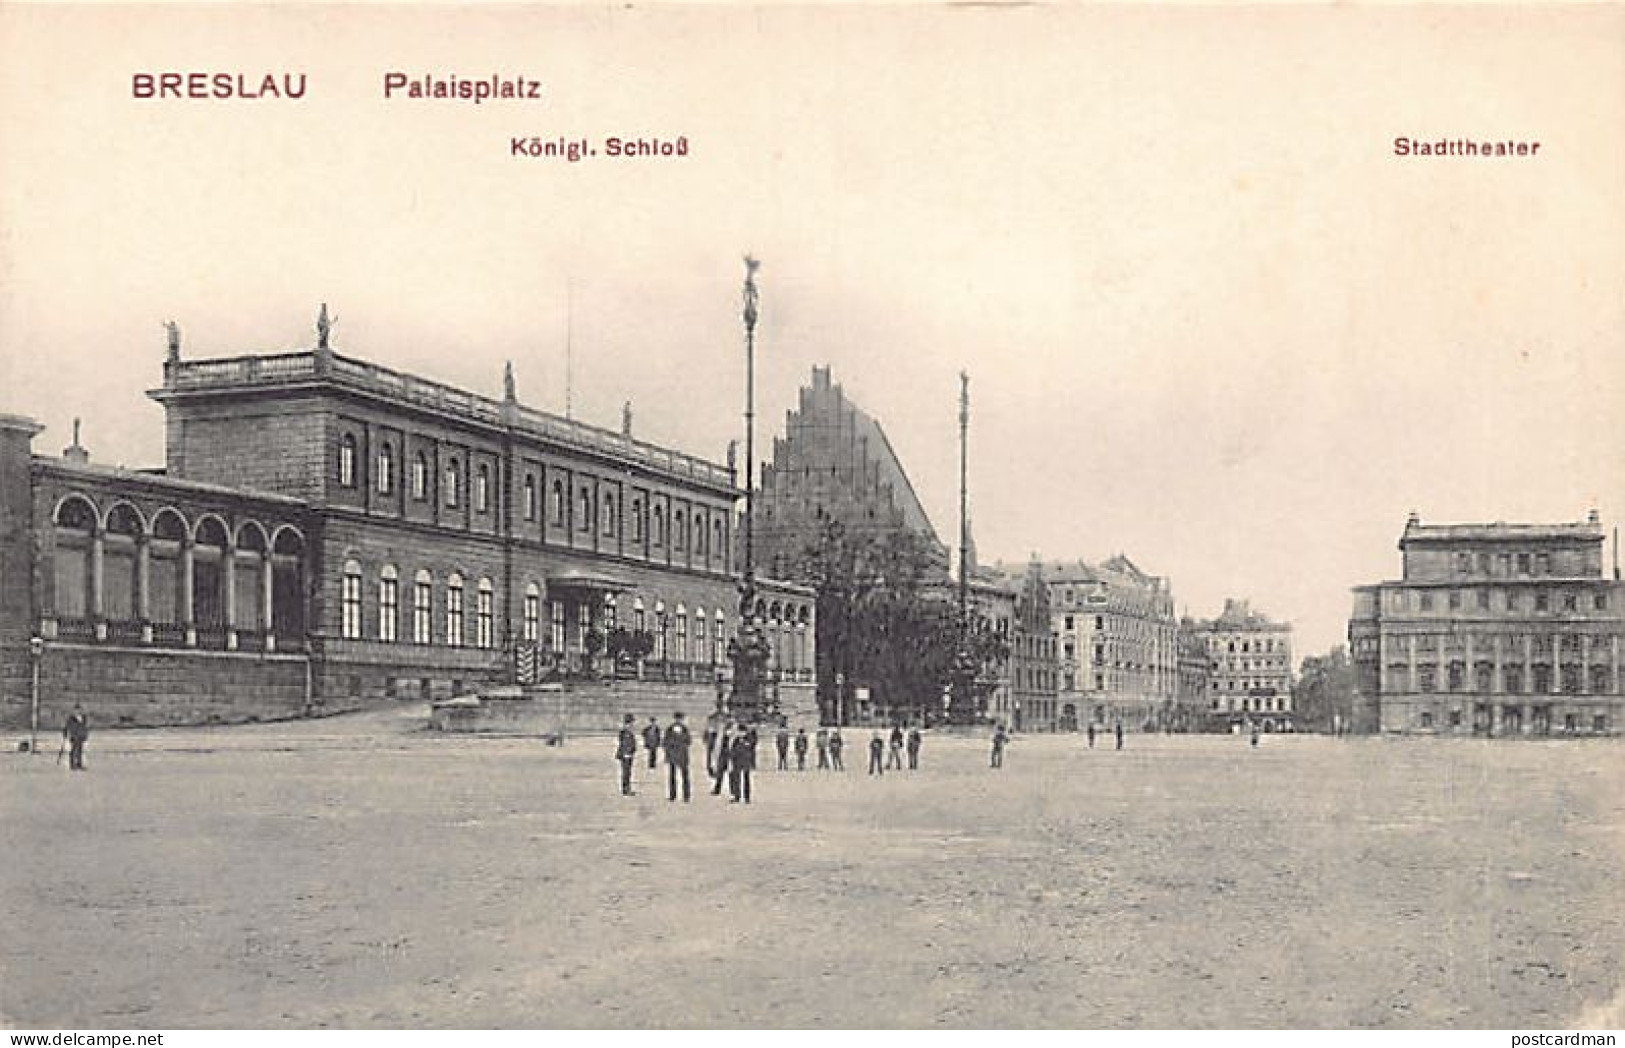 POLSKA Poland - WROCŁAW Breslau - Palaisplatz - Polonia